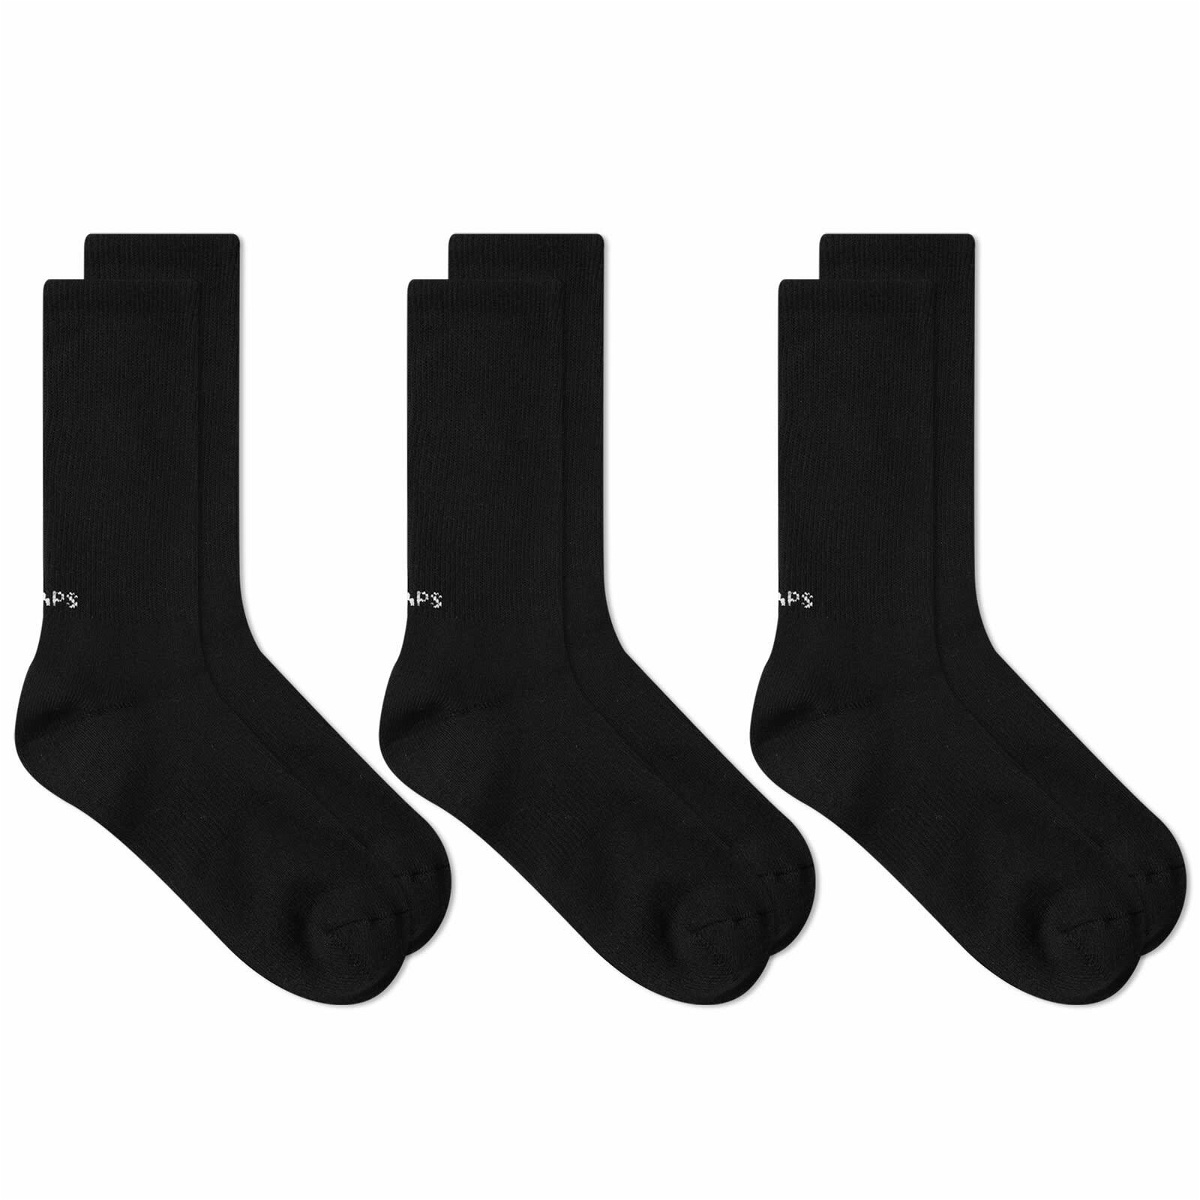 WTAPS Men's 05 Skivvies Sock - 3-Pack in Black WTAPS